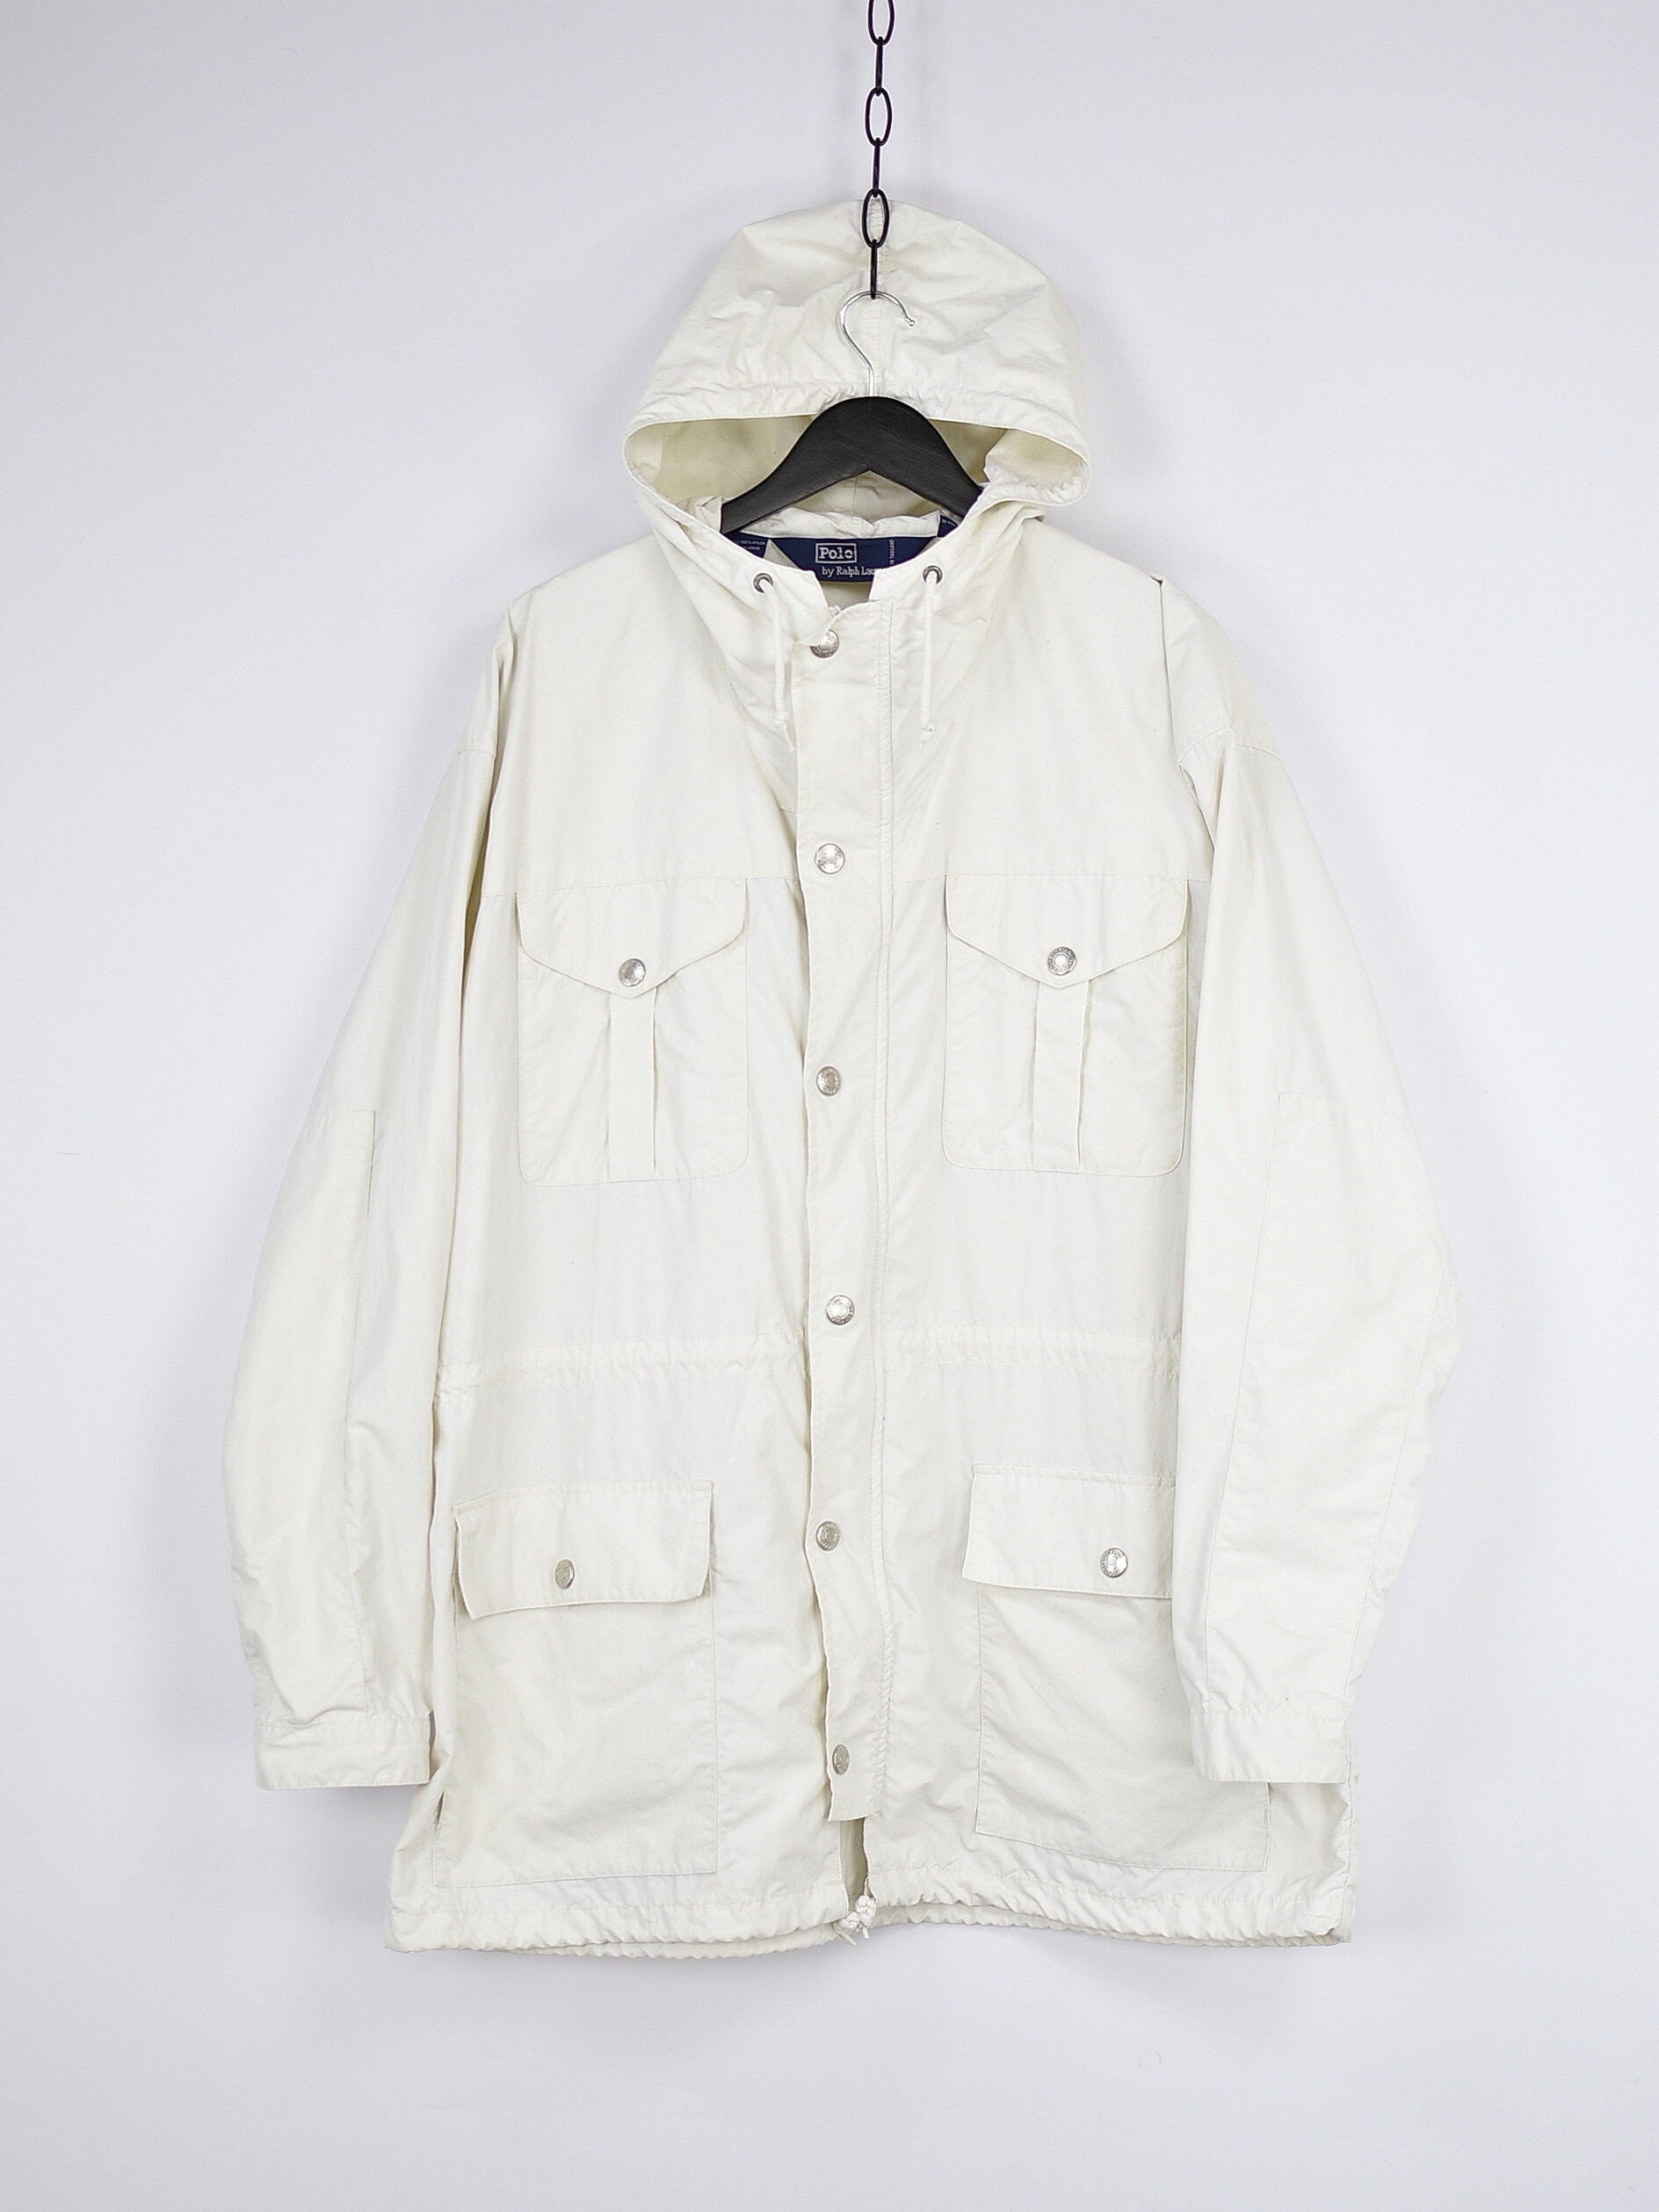 Vintage Polo Ralph Lauren White Light Jacket | Etsy